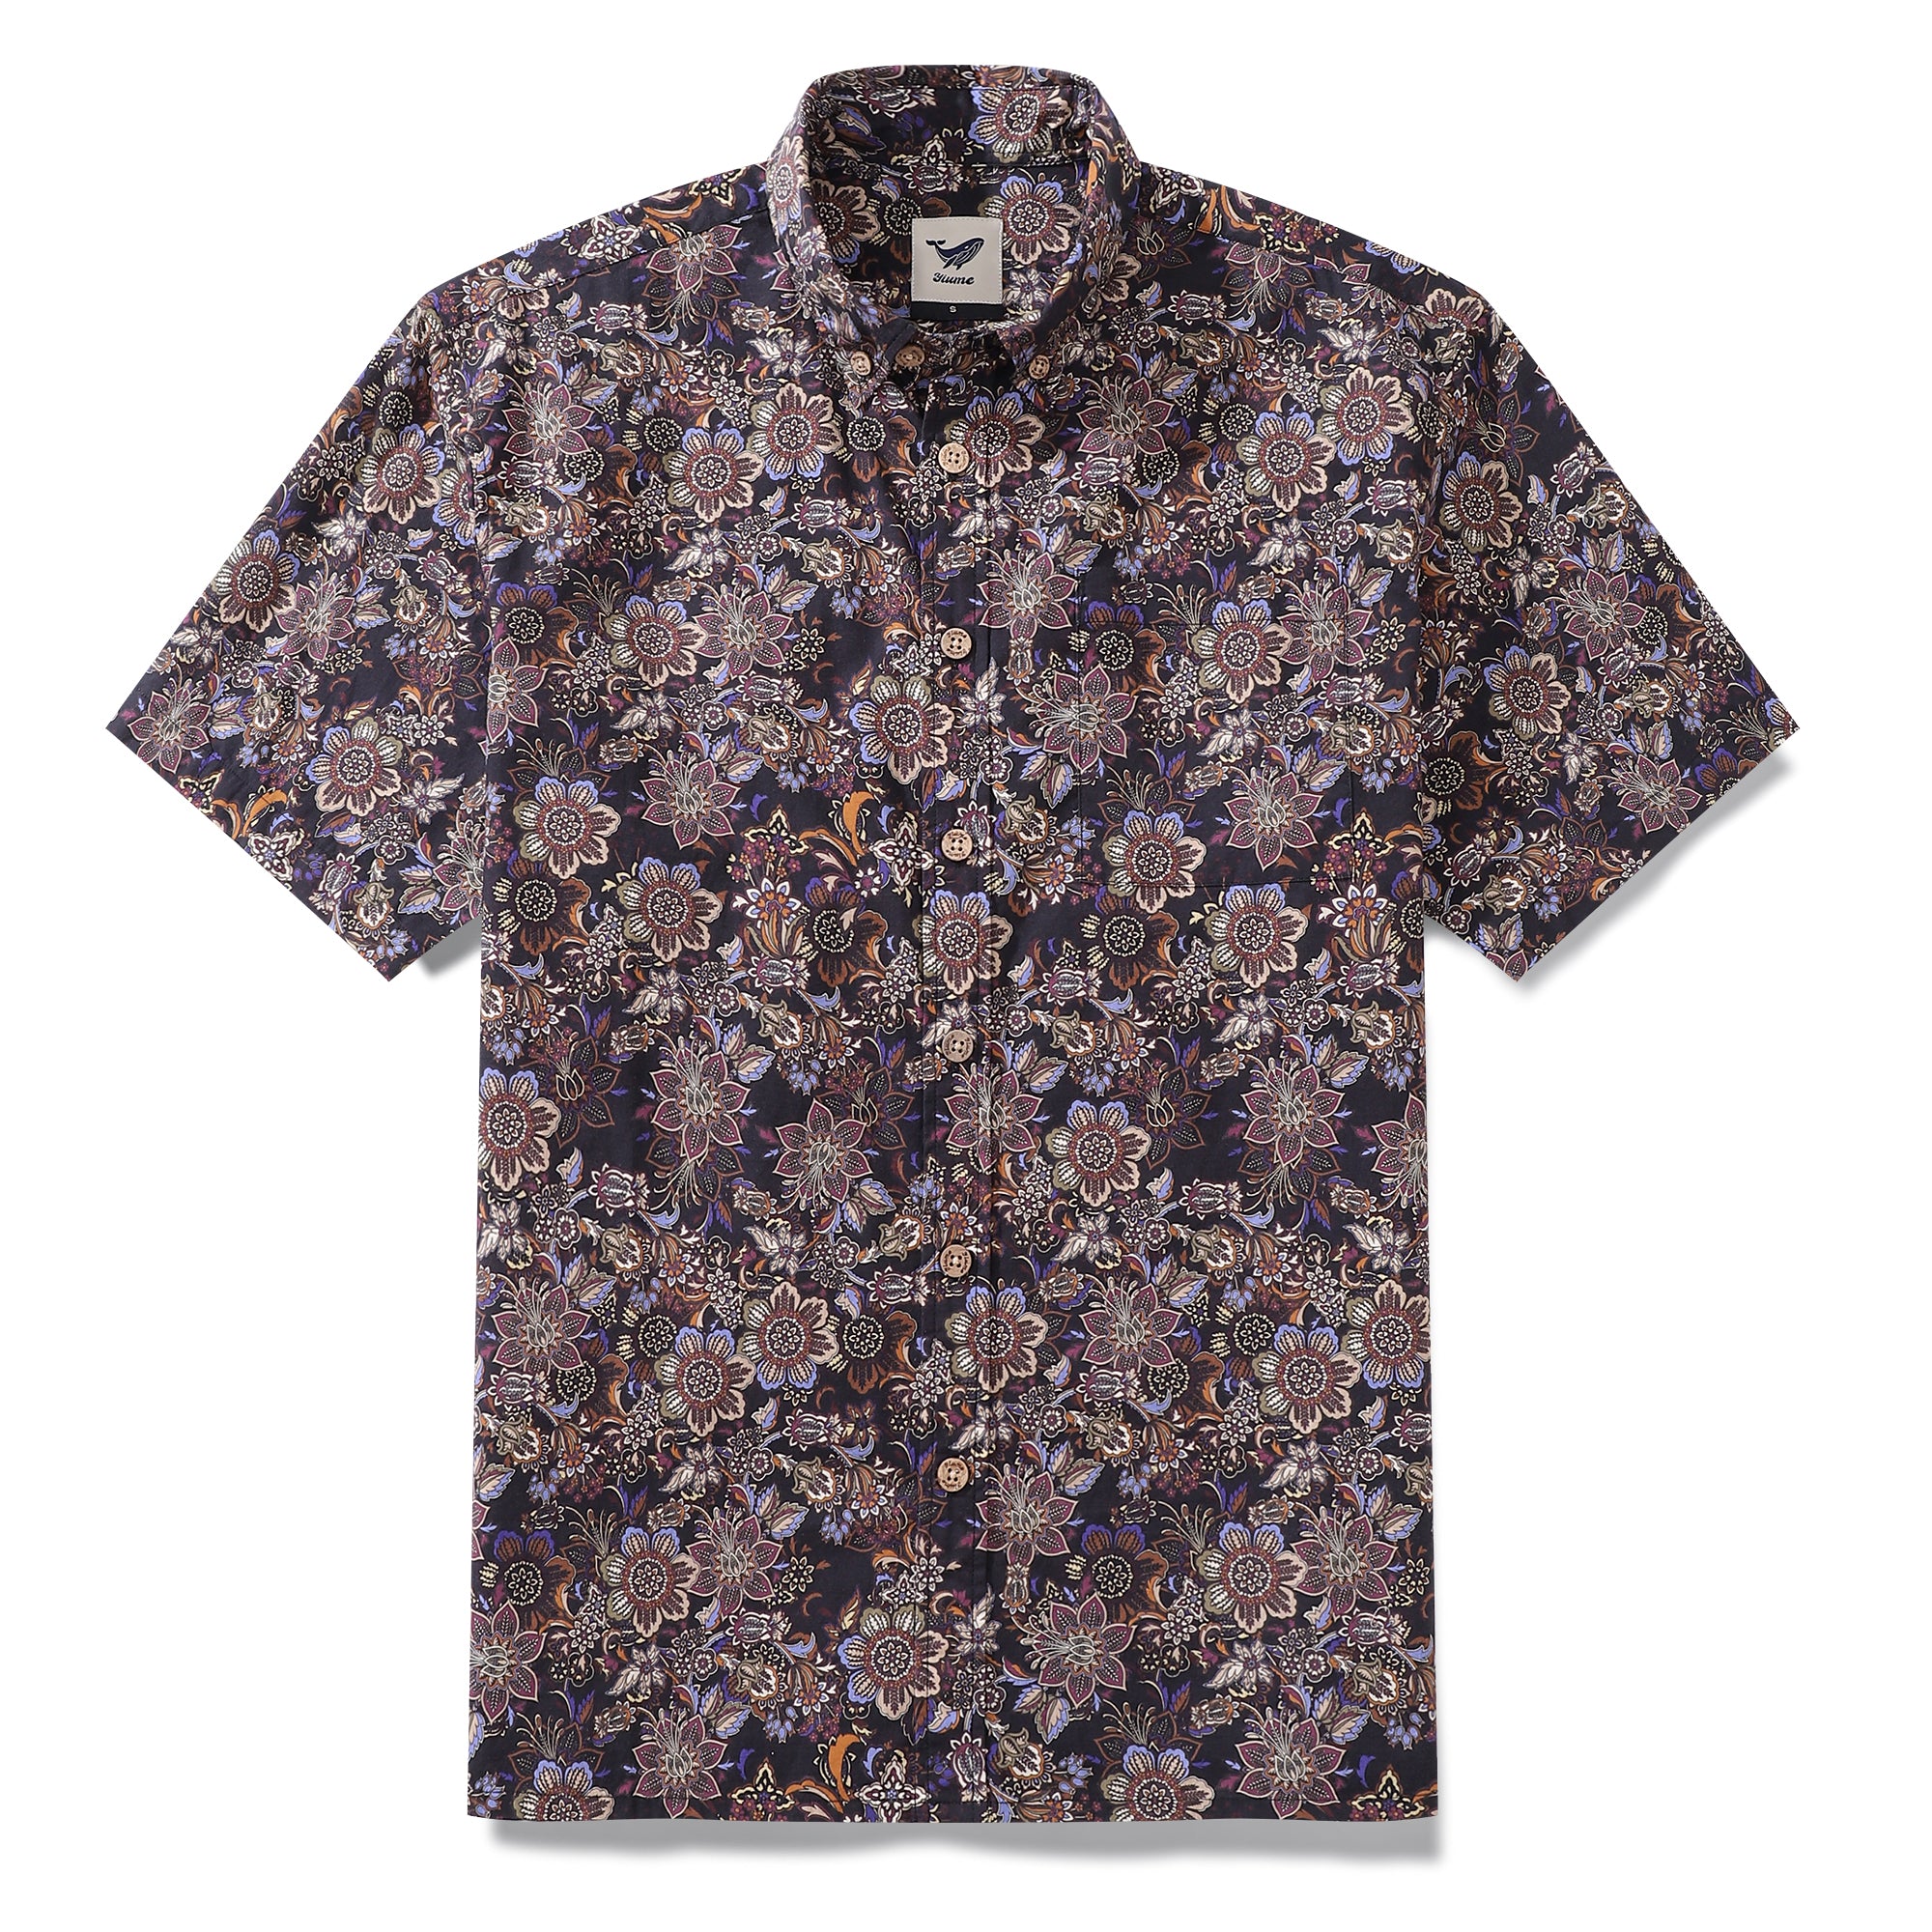 Men's Hawaiian Shirt Vintage Bouquet Print Cotton Button-down Short Sleeve Aloha Shirt